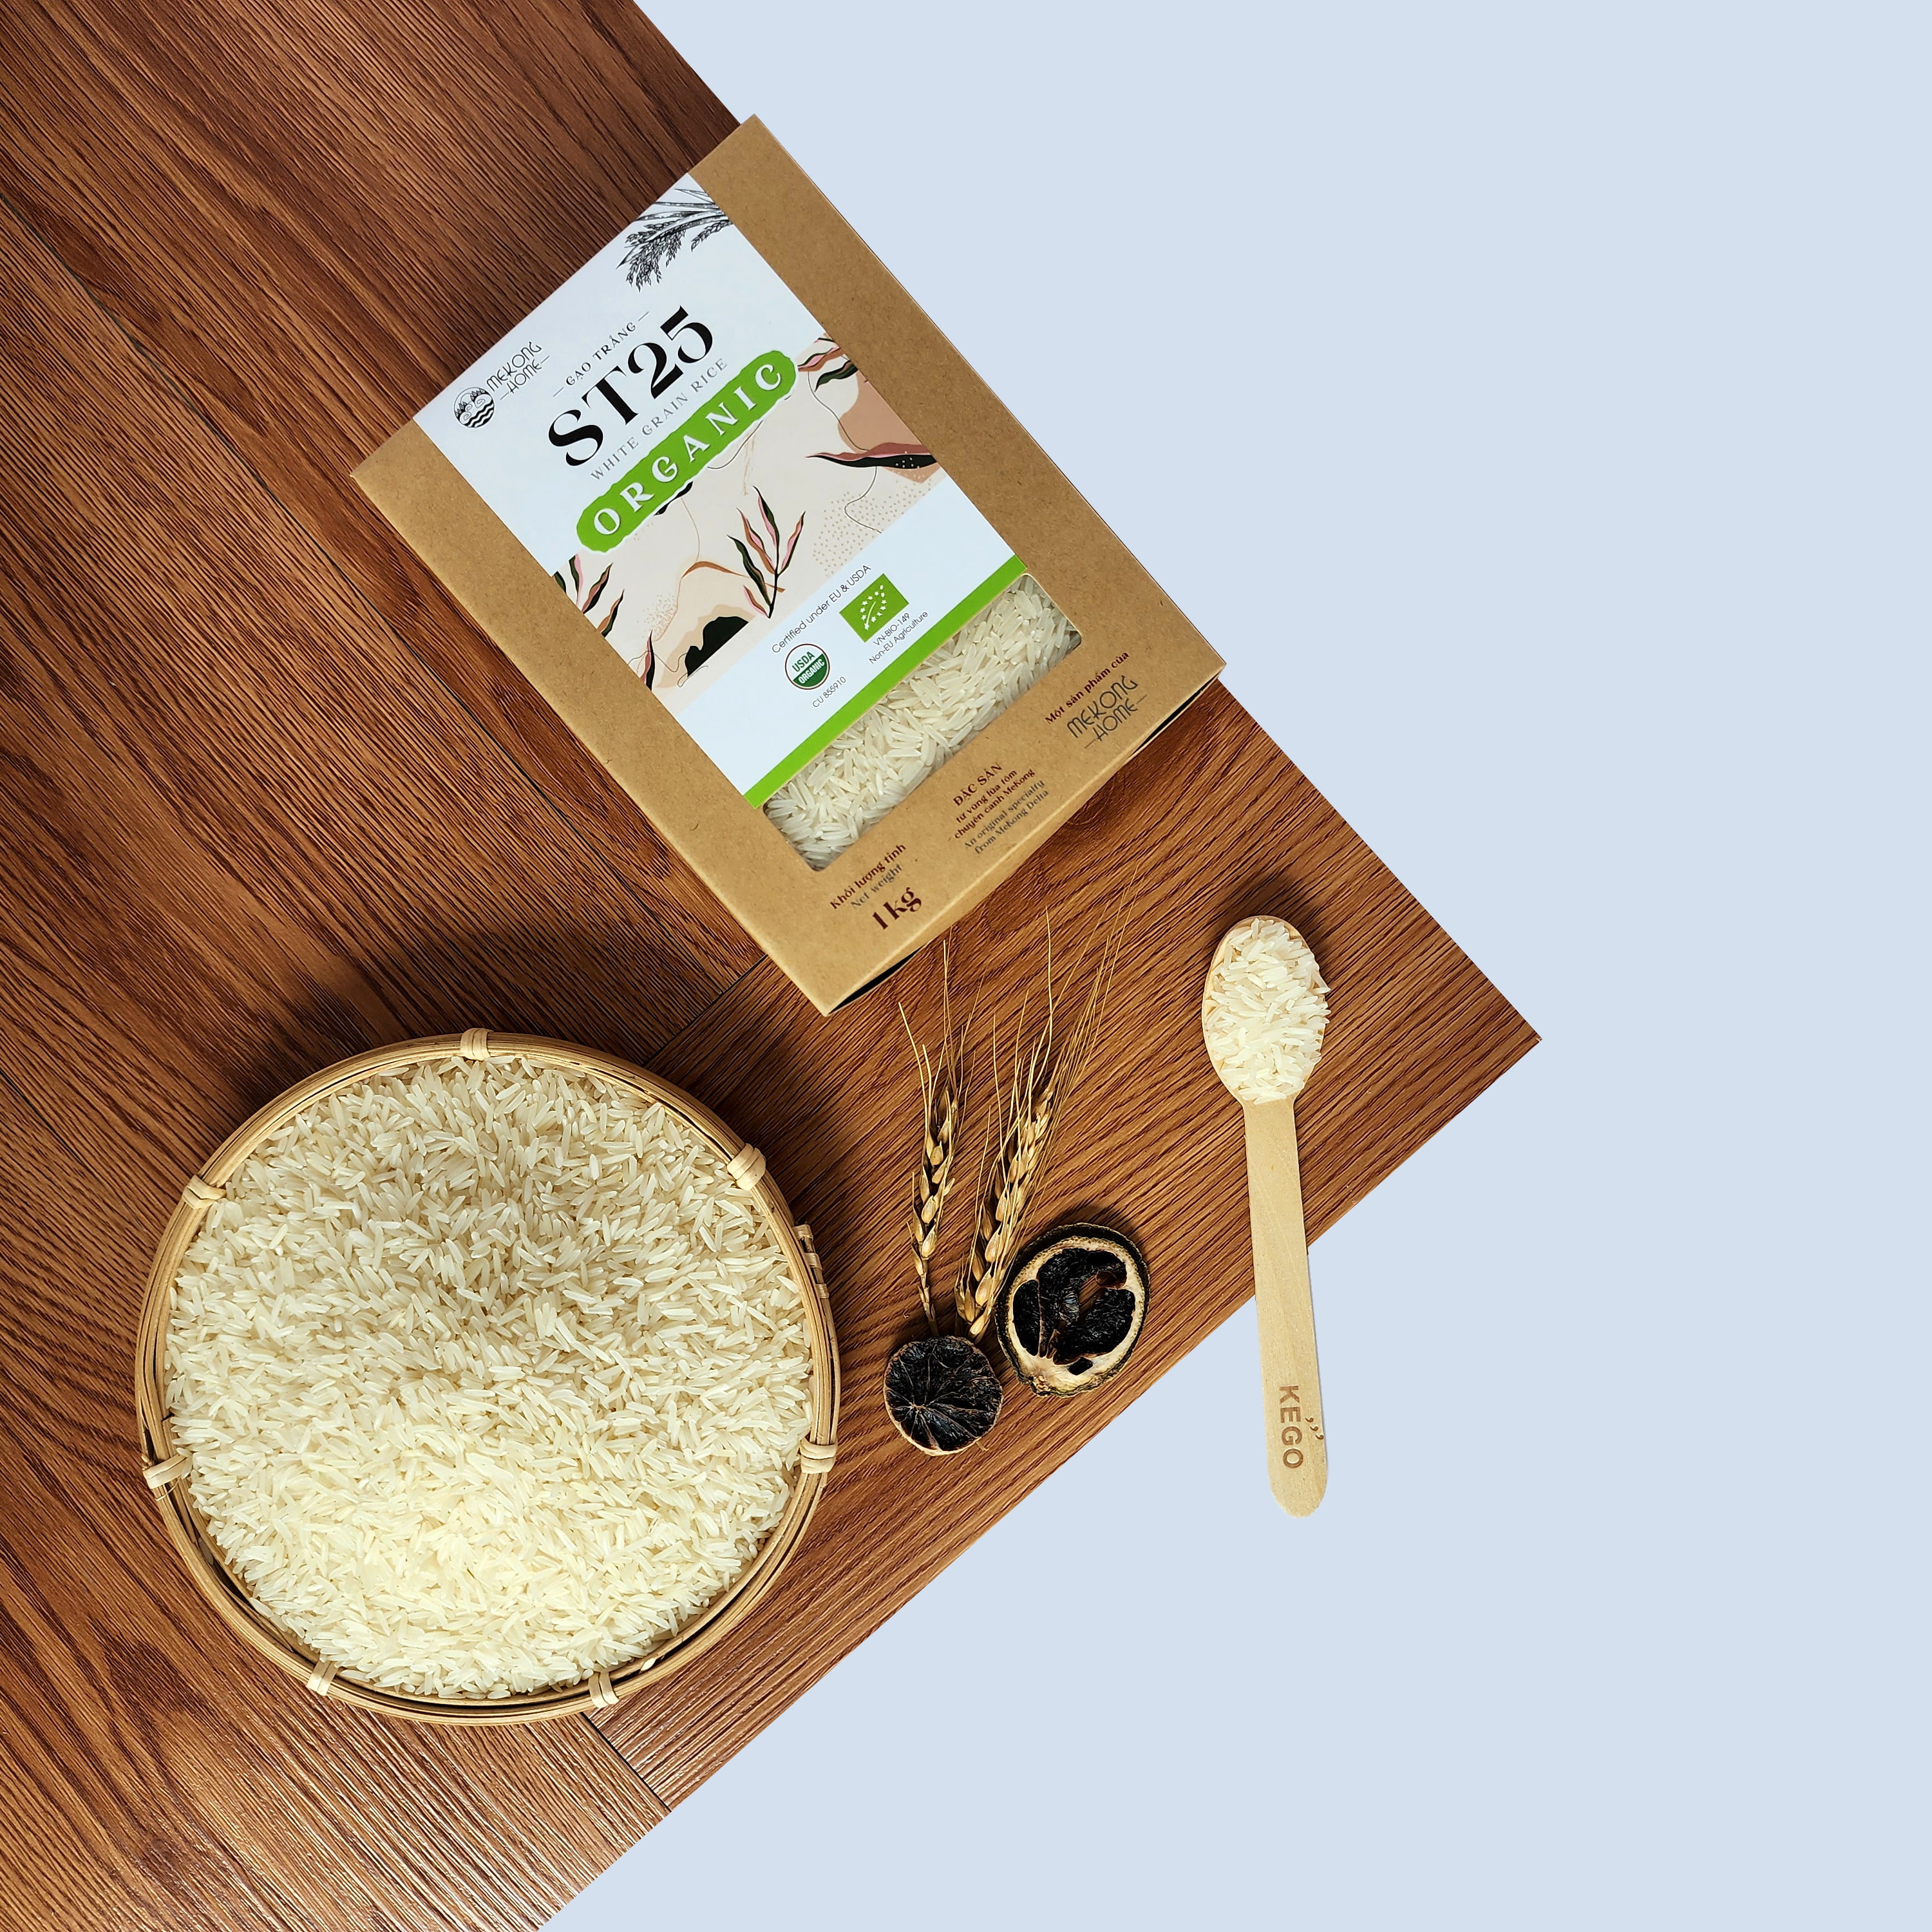 Gạo ST25 100% Organic, gạo chuẩn vị, dẻo, thơm tự nhiên, mùi ngọt nhẹ - 4kg